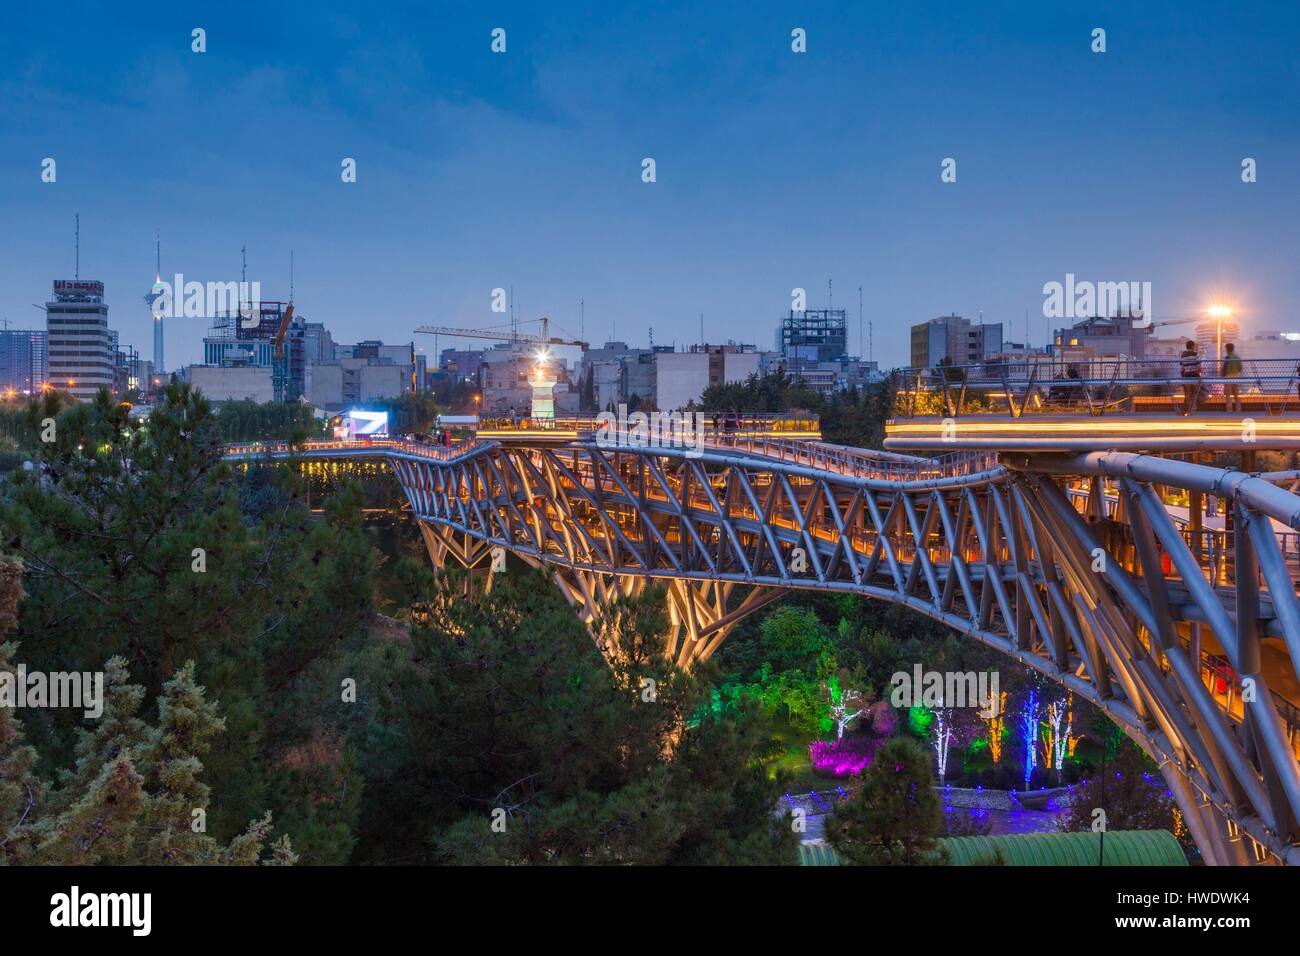 Iran, Teheran, Skyline der Stadt vom Pol e Tabiat Natur Brücke, kanadisch-iranische Architekten Leila Araghian, gebaut im Jahr 2014, Dämmerung Stockfoto